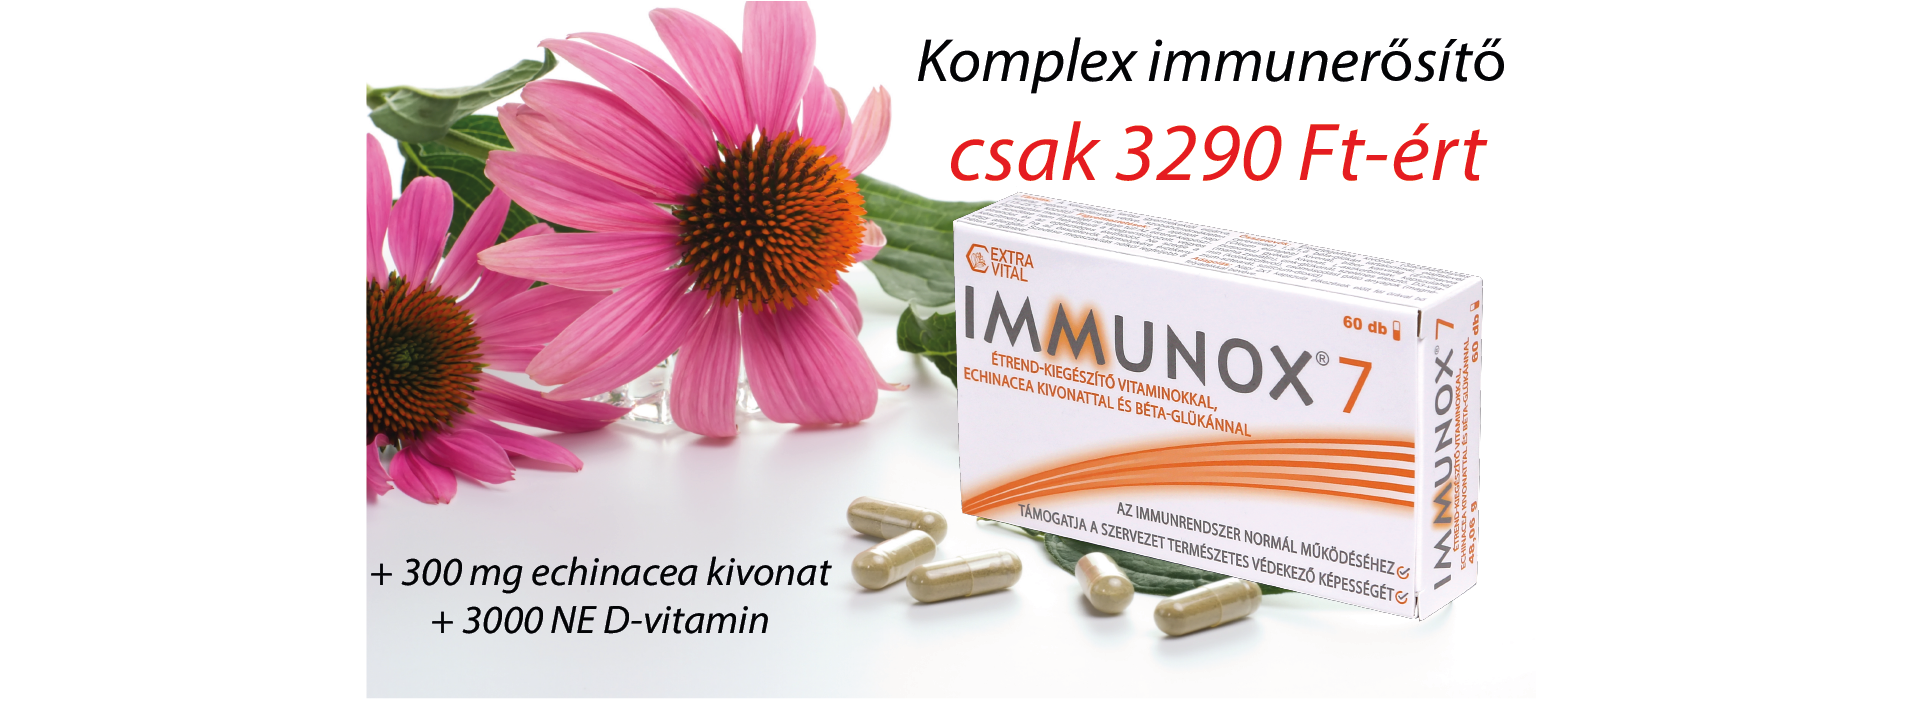 Immunox